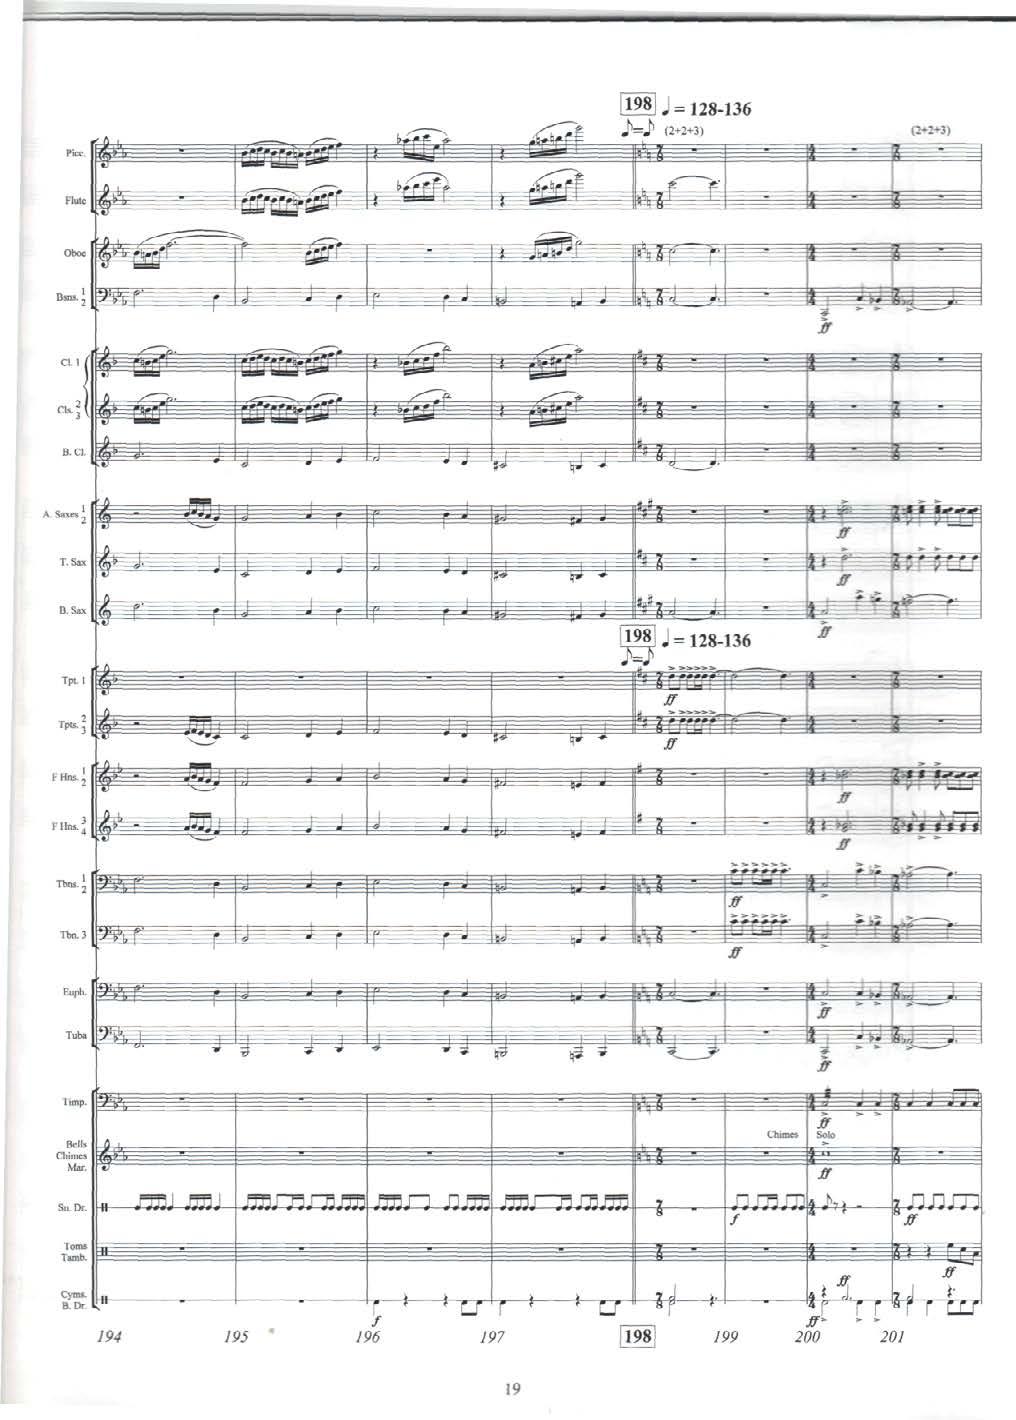 [198] J = 128-136 JW 1 (2+2+3) Flute Oboe A. Saxes P = T. Sax B. Sax P = 128-136 5s»' Tpts., FHns.